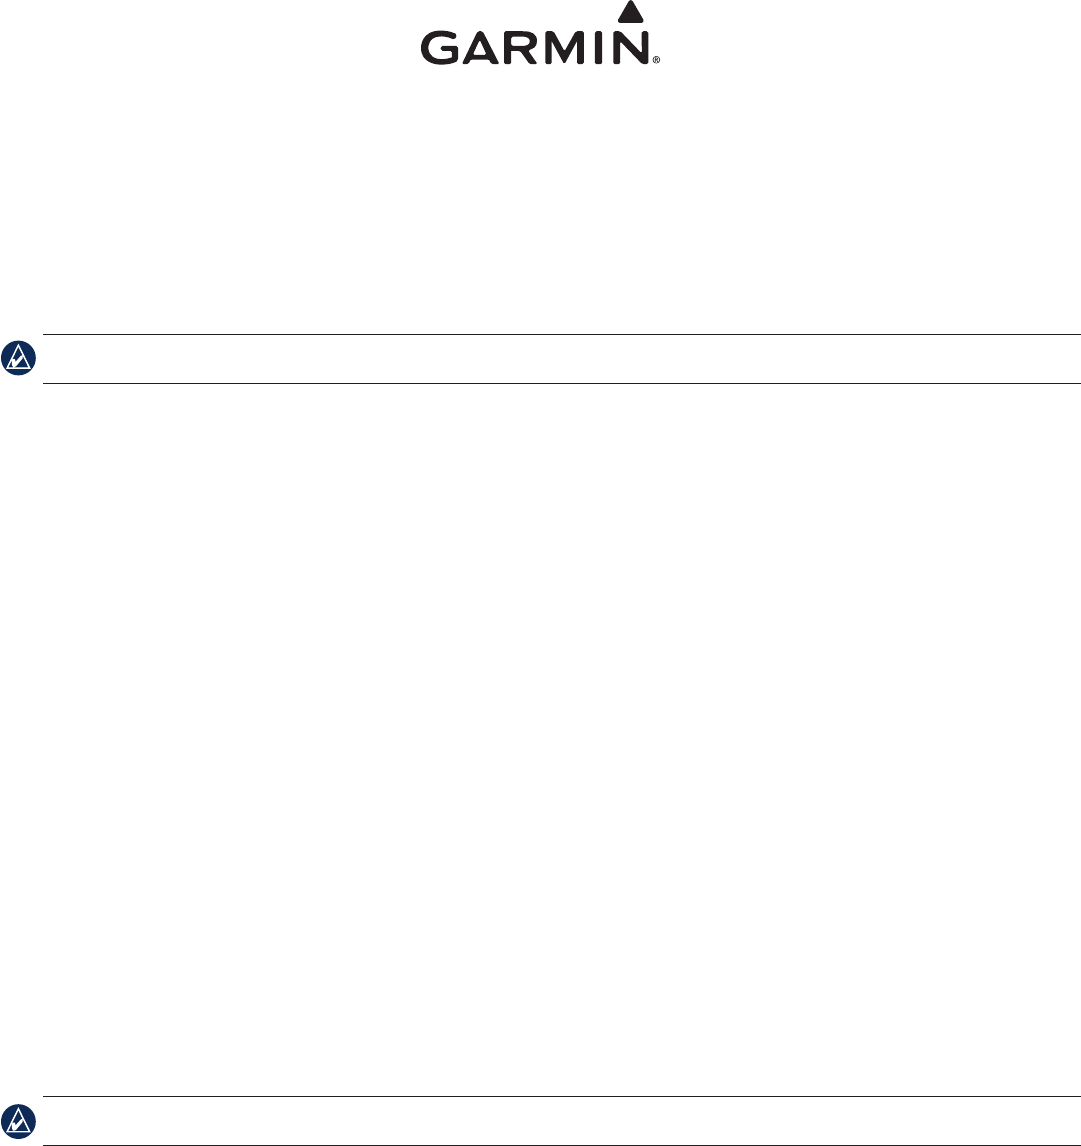 Garmin mapsource for mac